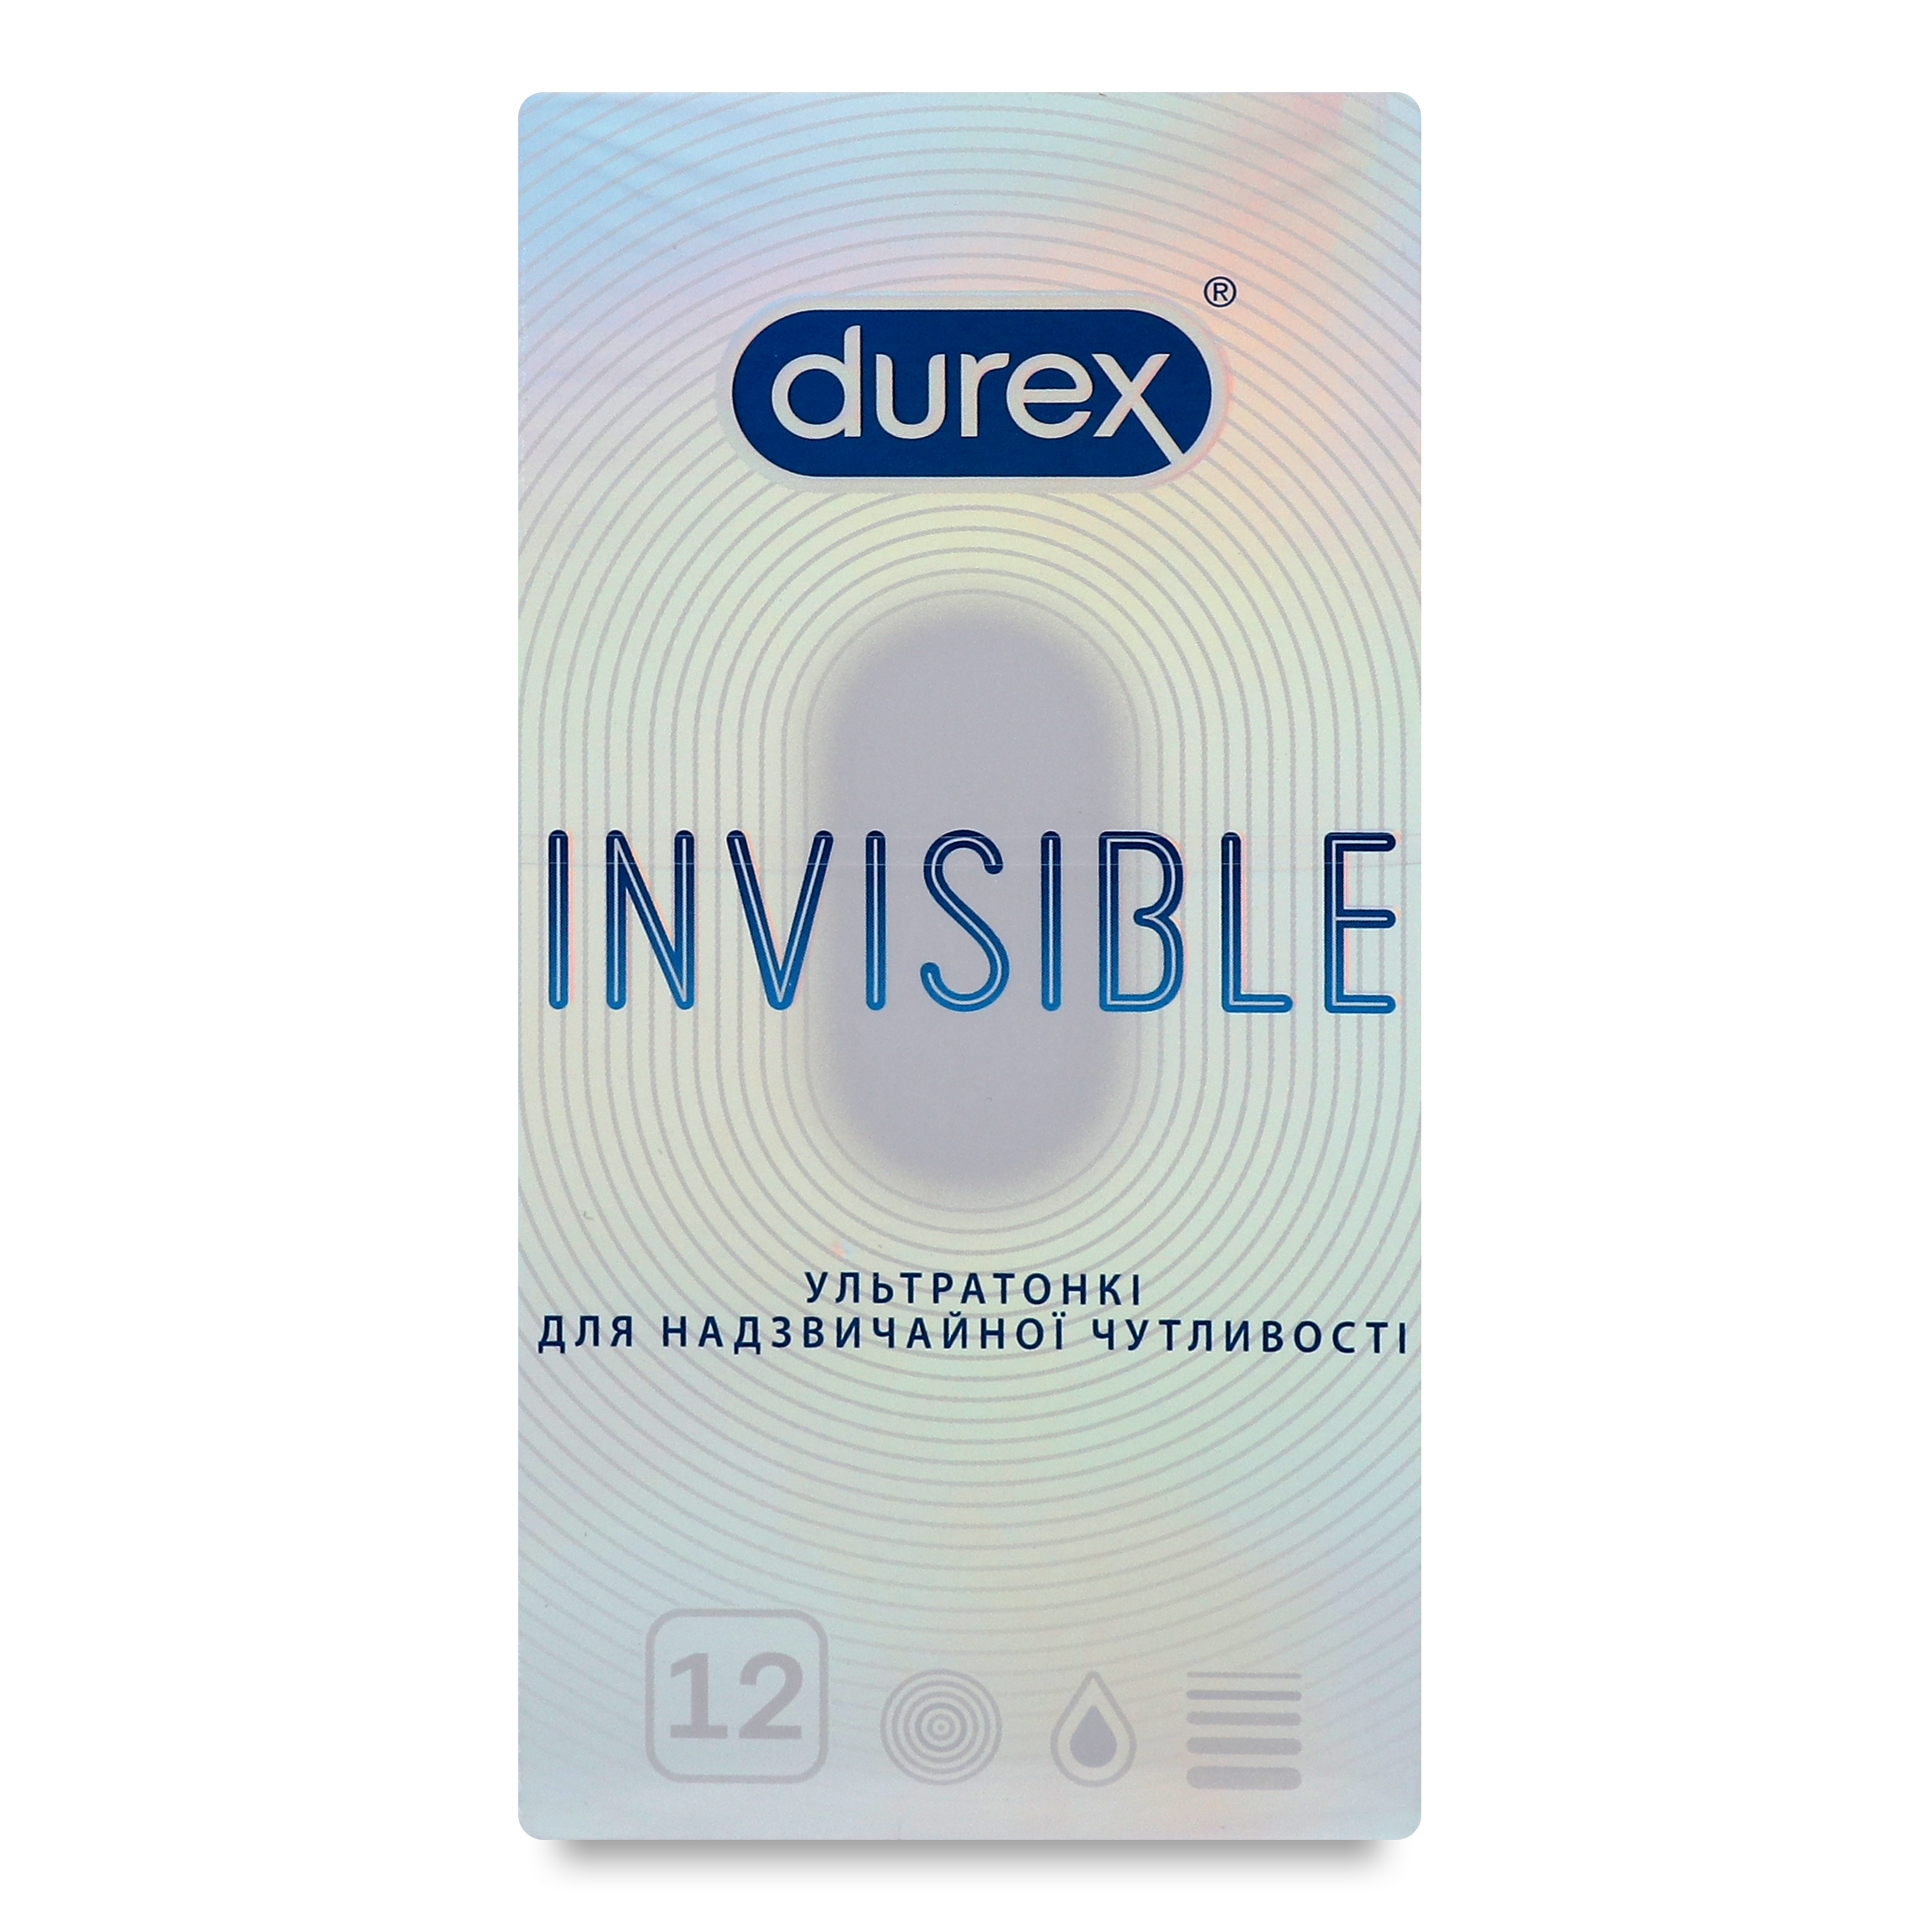 Durex Invisible Condoms 12pcs